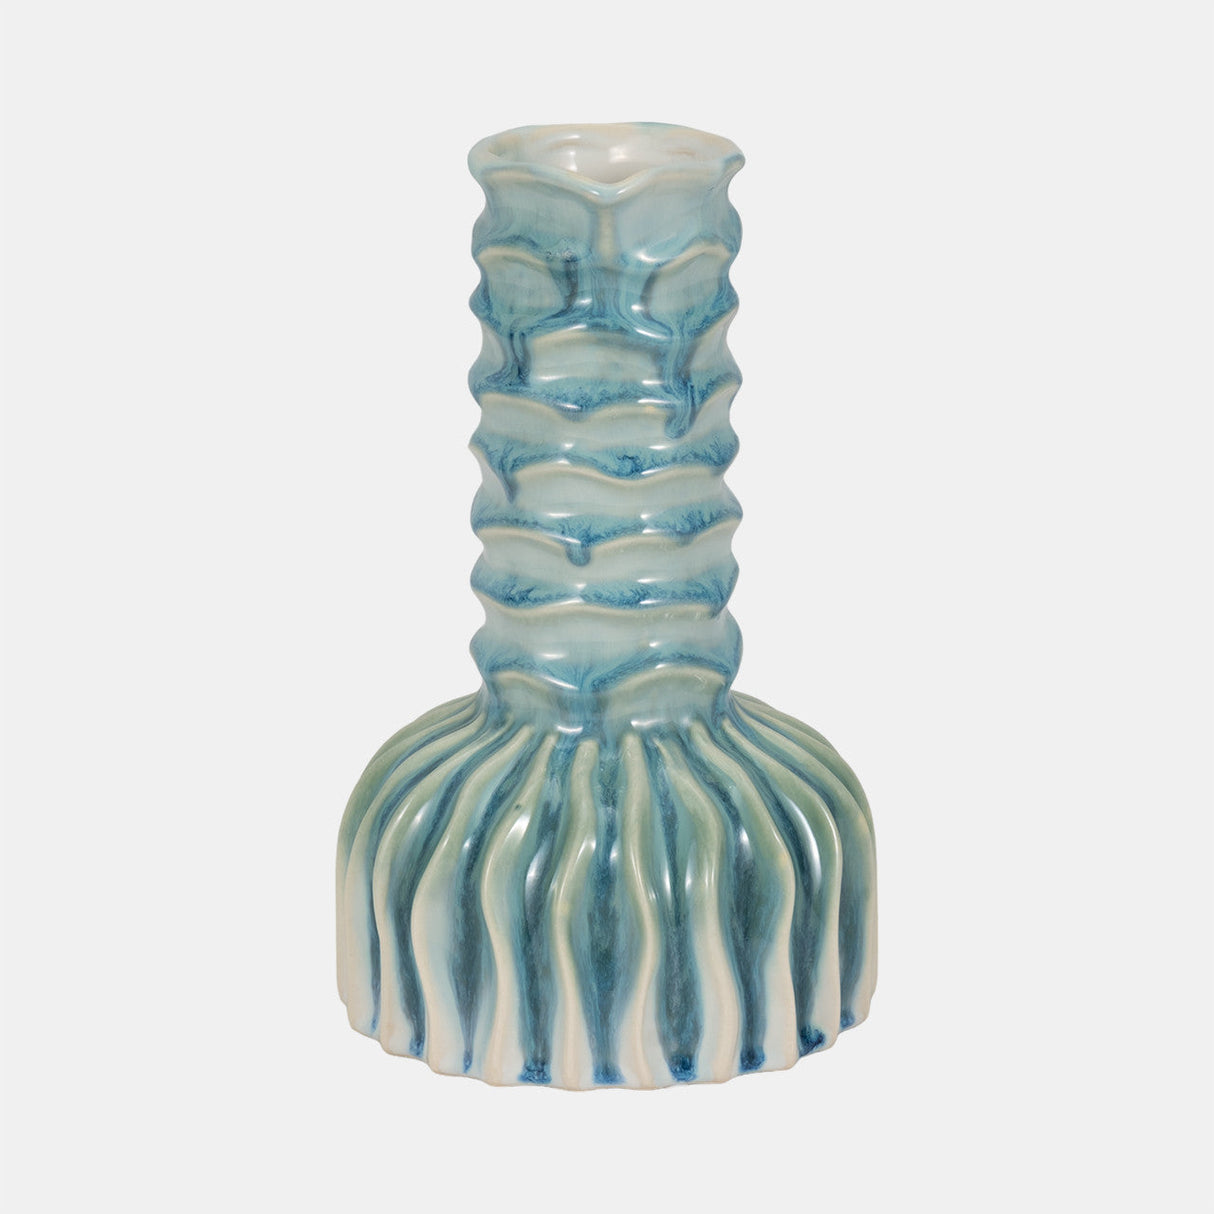 9" Coastal Ribbed Bud Vase Reactive Finish, Blue